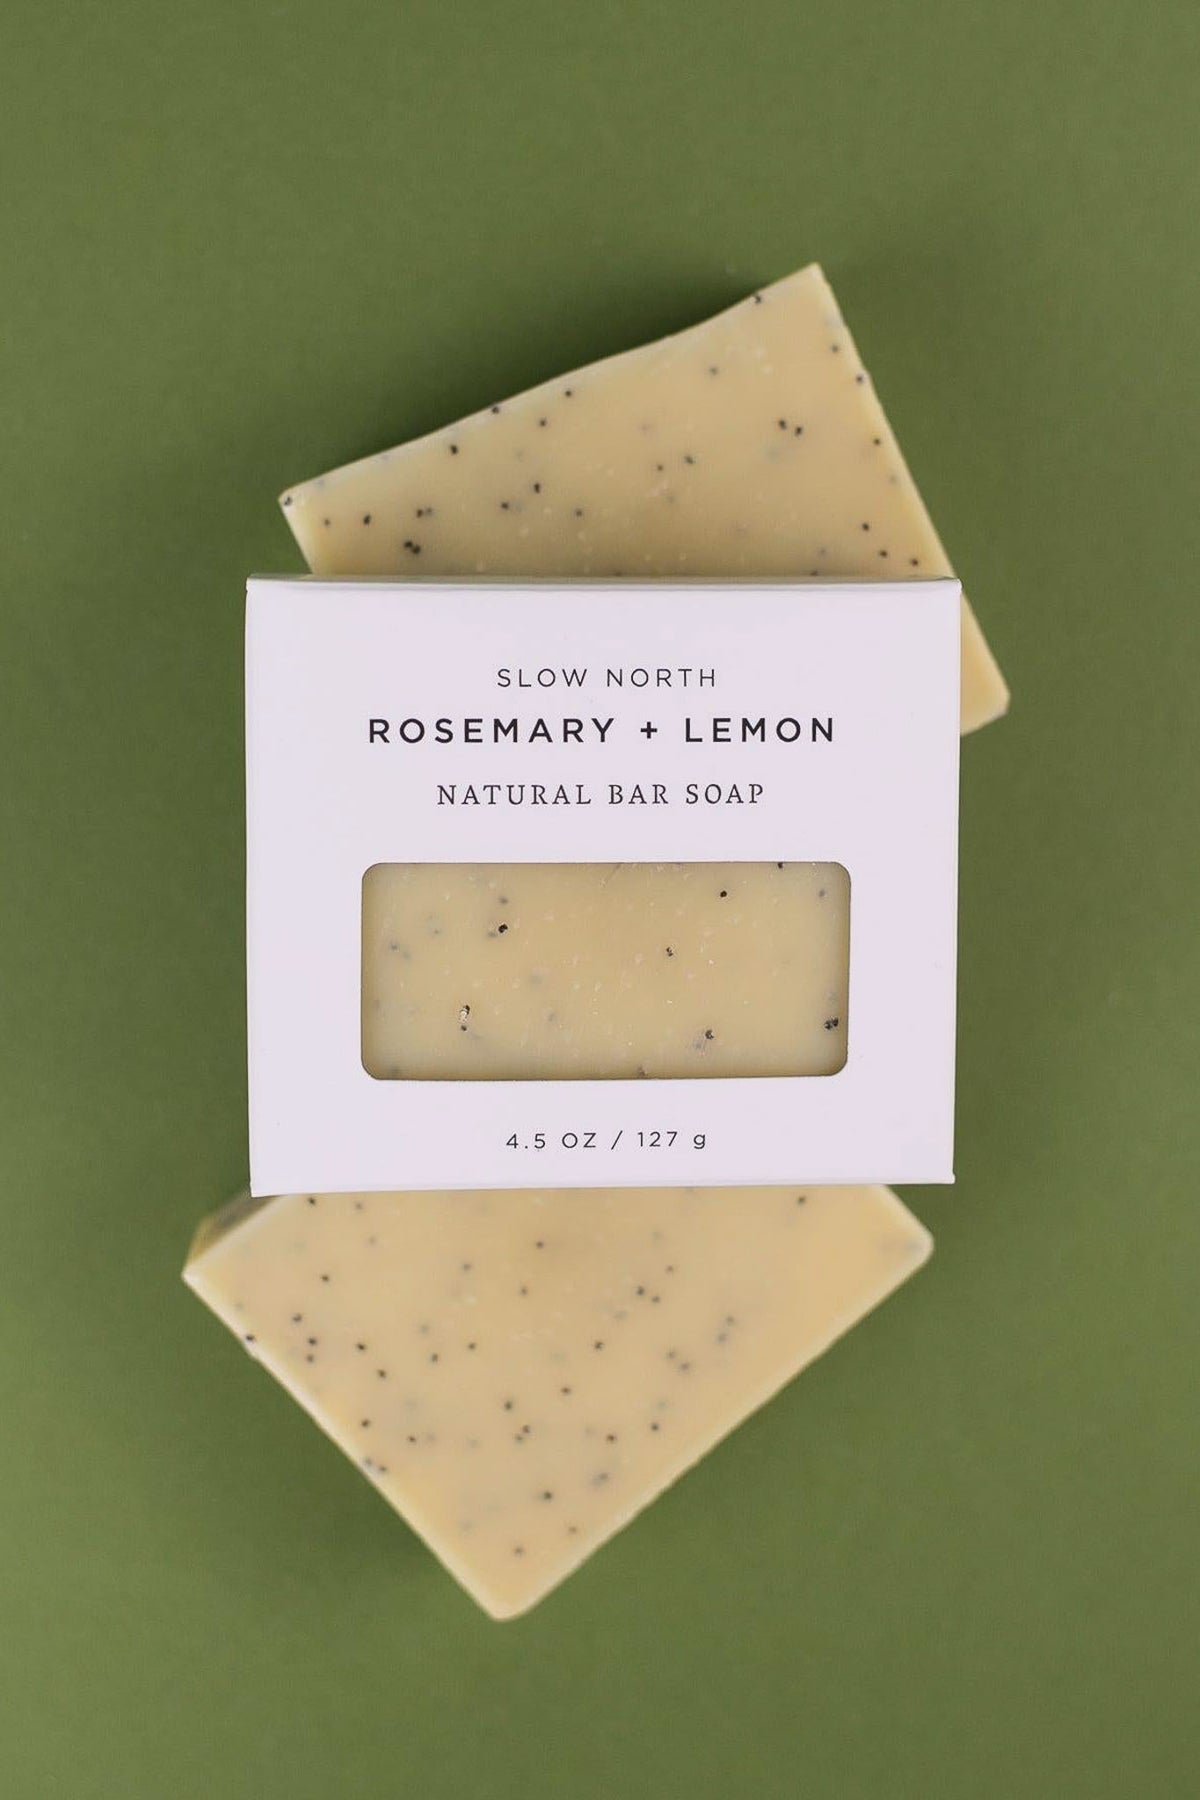 Slow North Rosemary + Lemon Natural Bar Soap